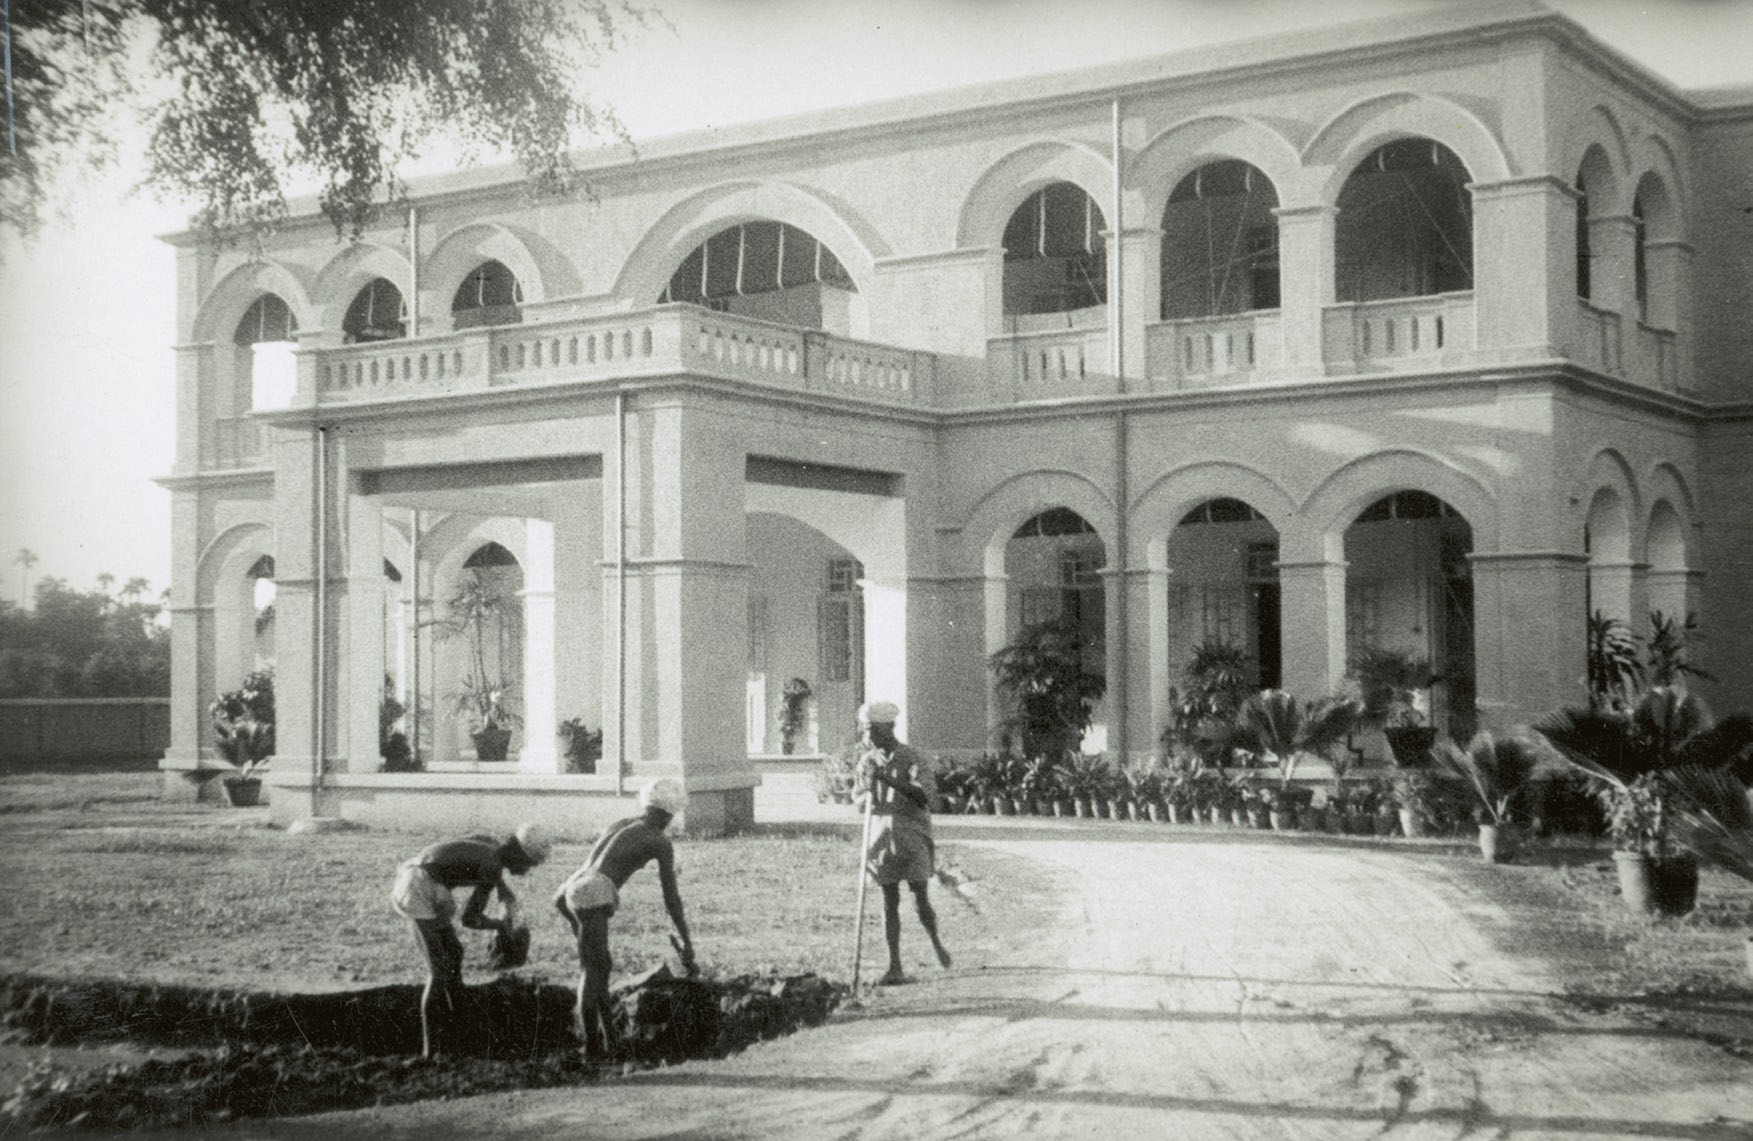 KIRSTEN THISTED Bestyrer Aschengrens Bolig i Madras. (ØK). S.P. Foto 1932. substantielt forbinder dem historisk, politisk eller kulturelt med det omgivende samfund.